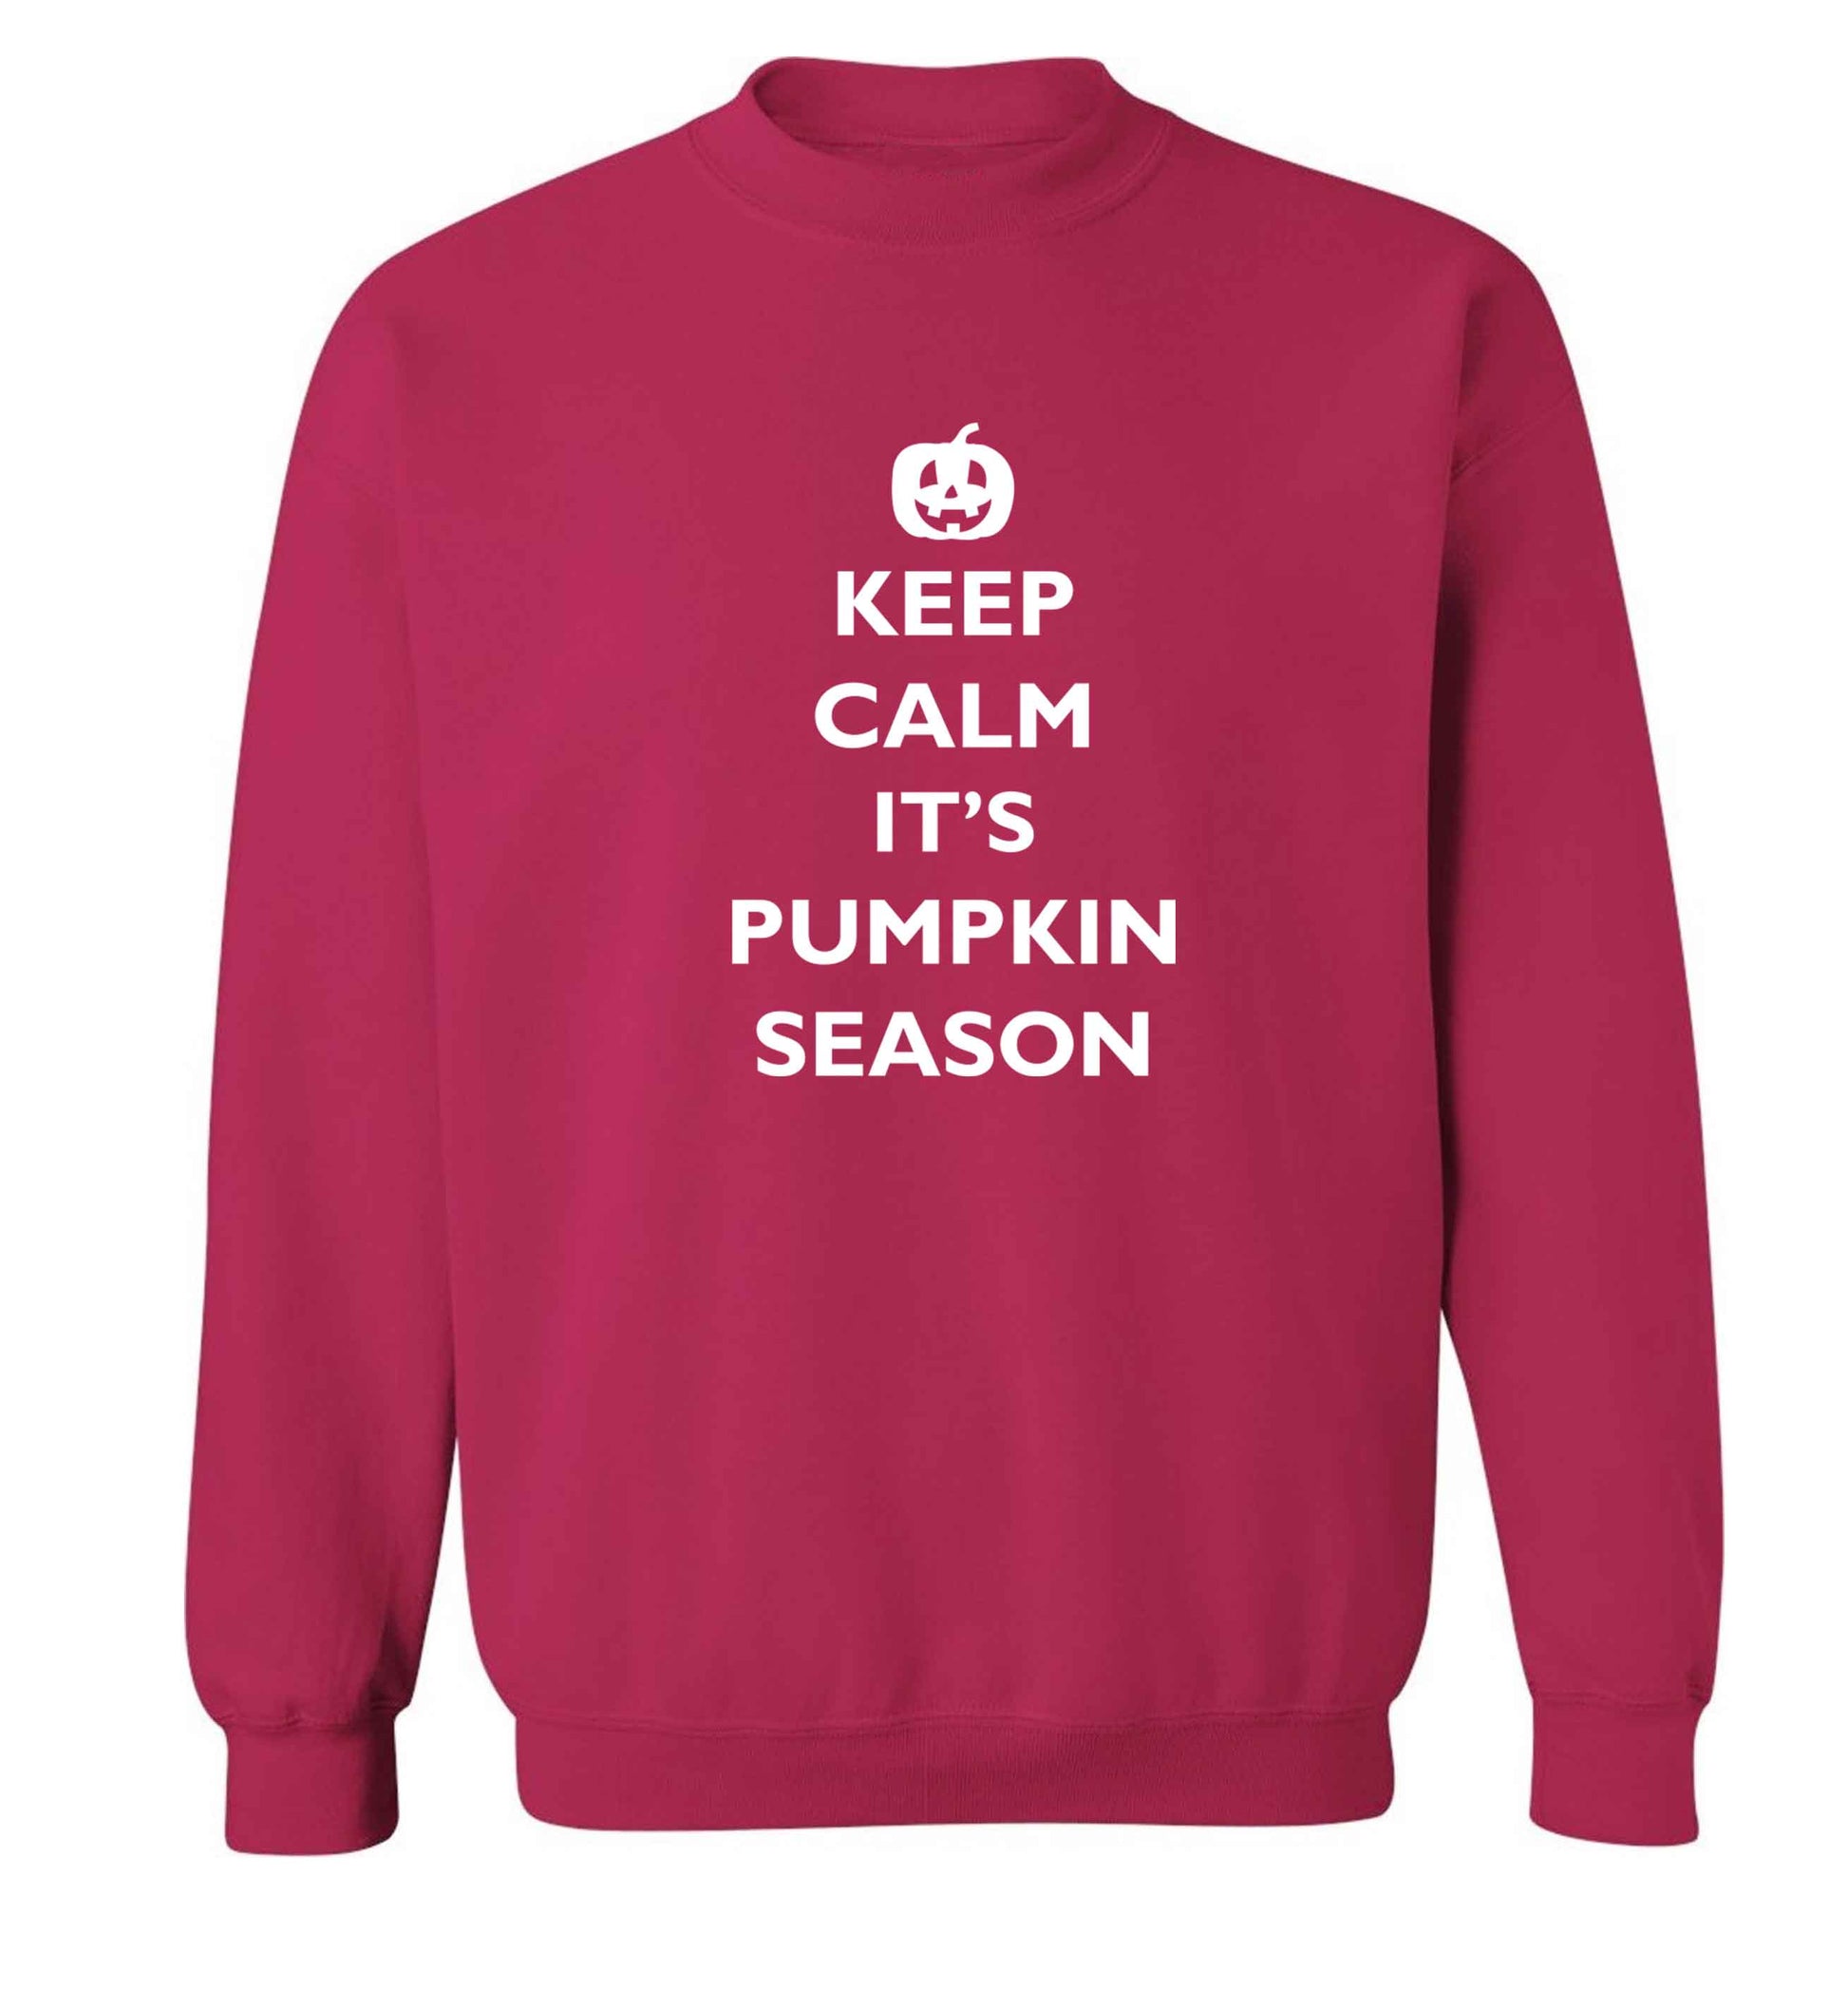 Calm Pumpkin Season adult's unisex pink sweater 2XL